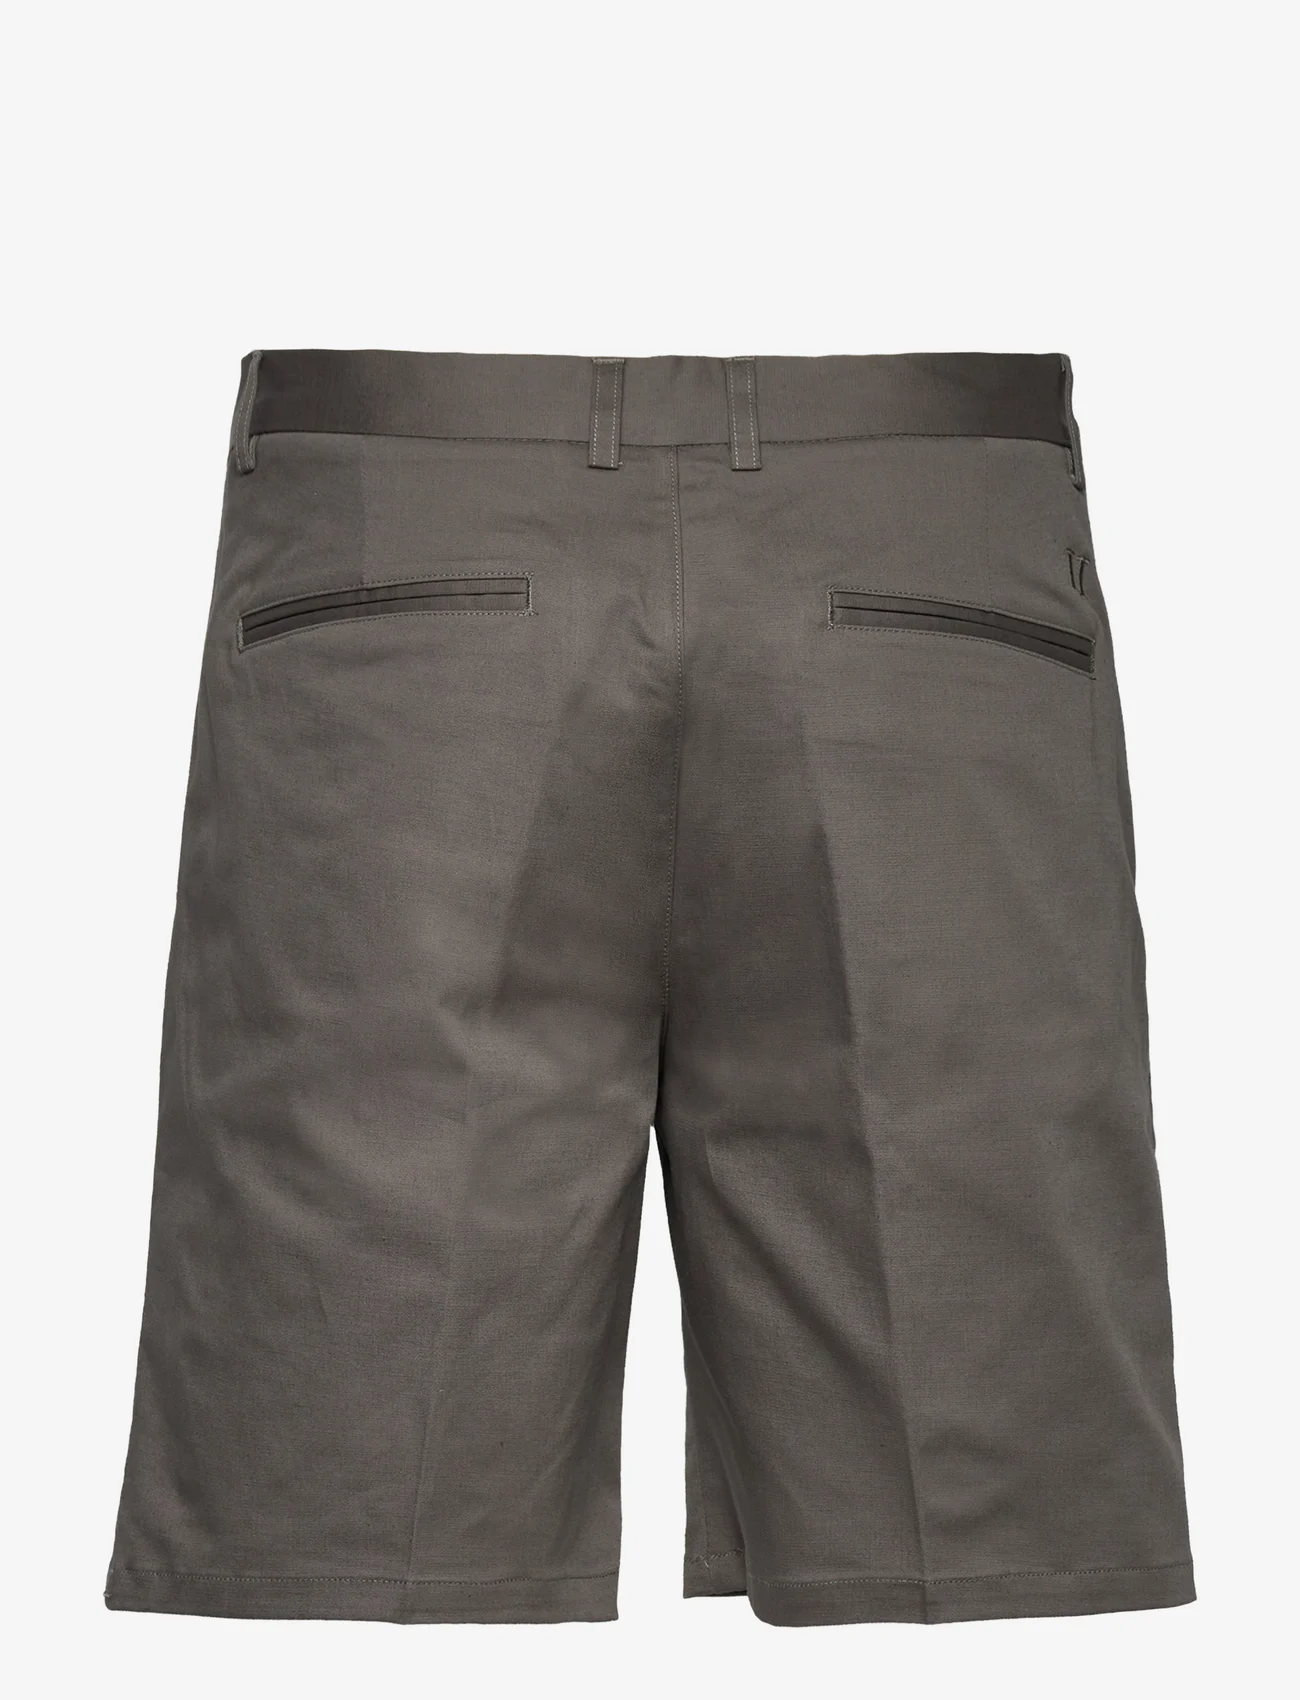 Les Deux - Como Reg Cotton-Linen Shorts - chinos shorts - raven - 1